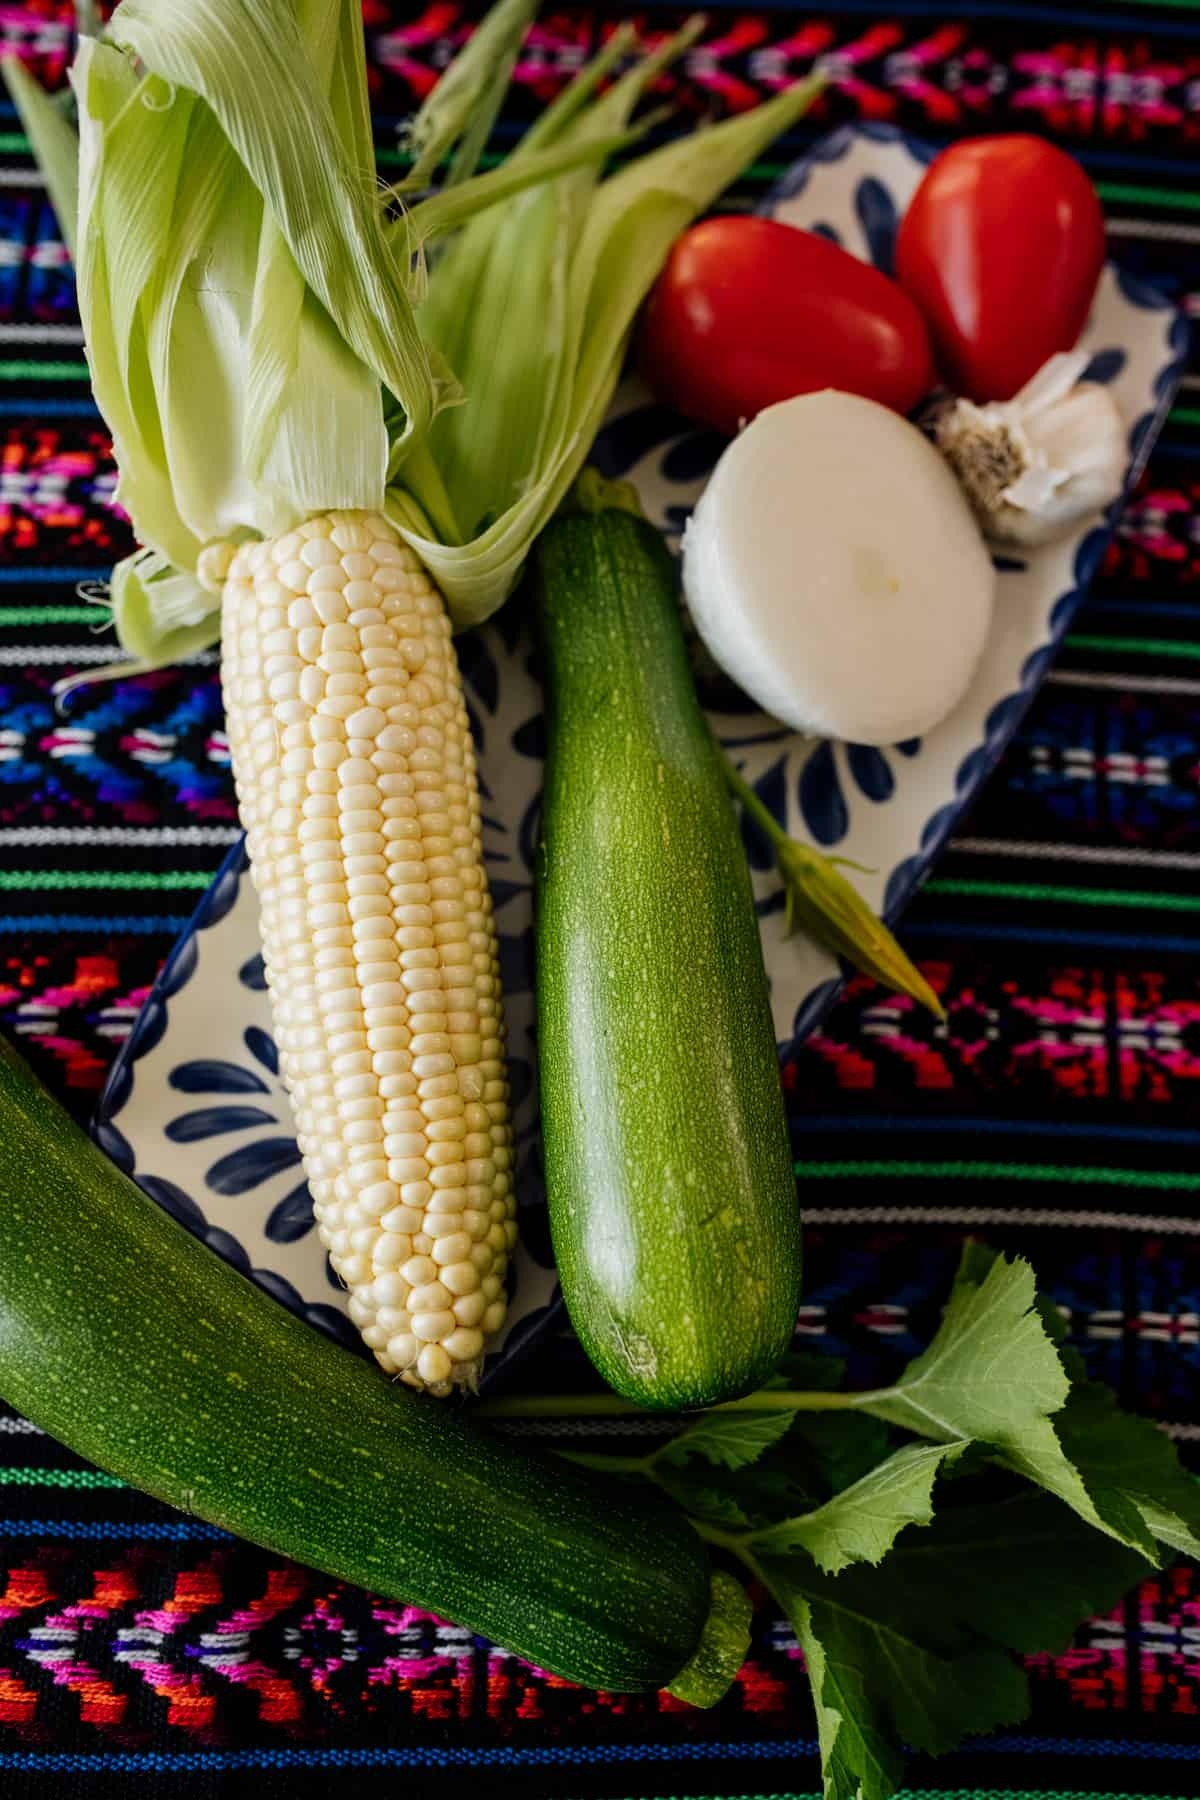 Tomate, cebola, milho e abobrinha em uma pequena bandeja em cima de um colorido corredor mexicano